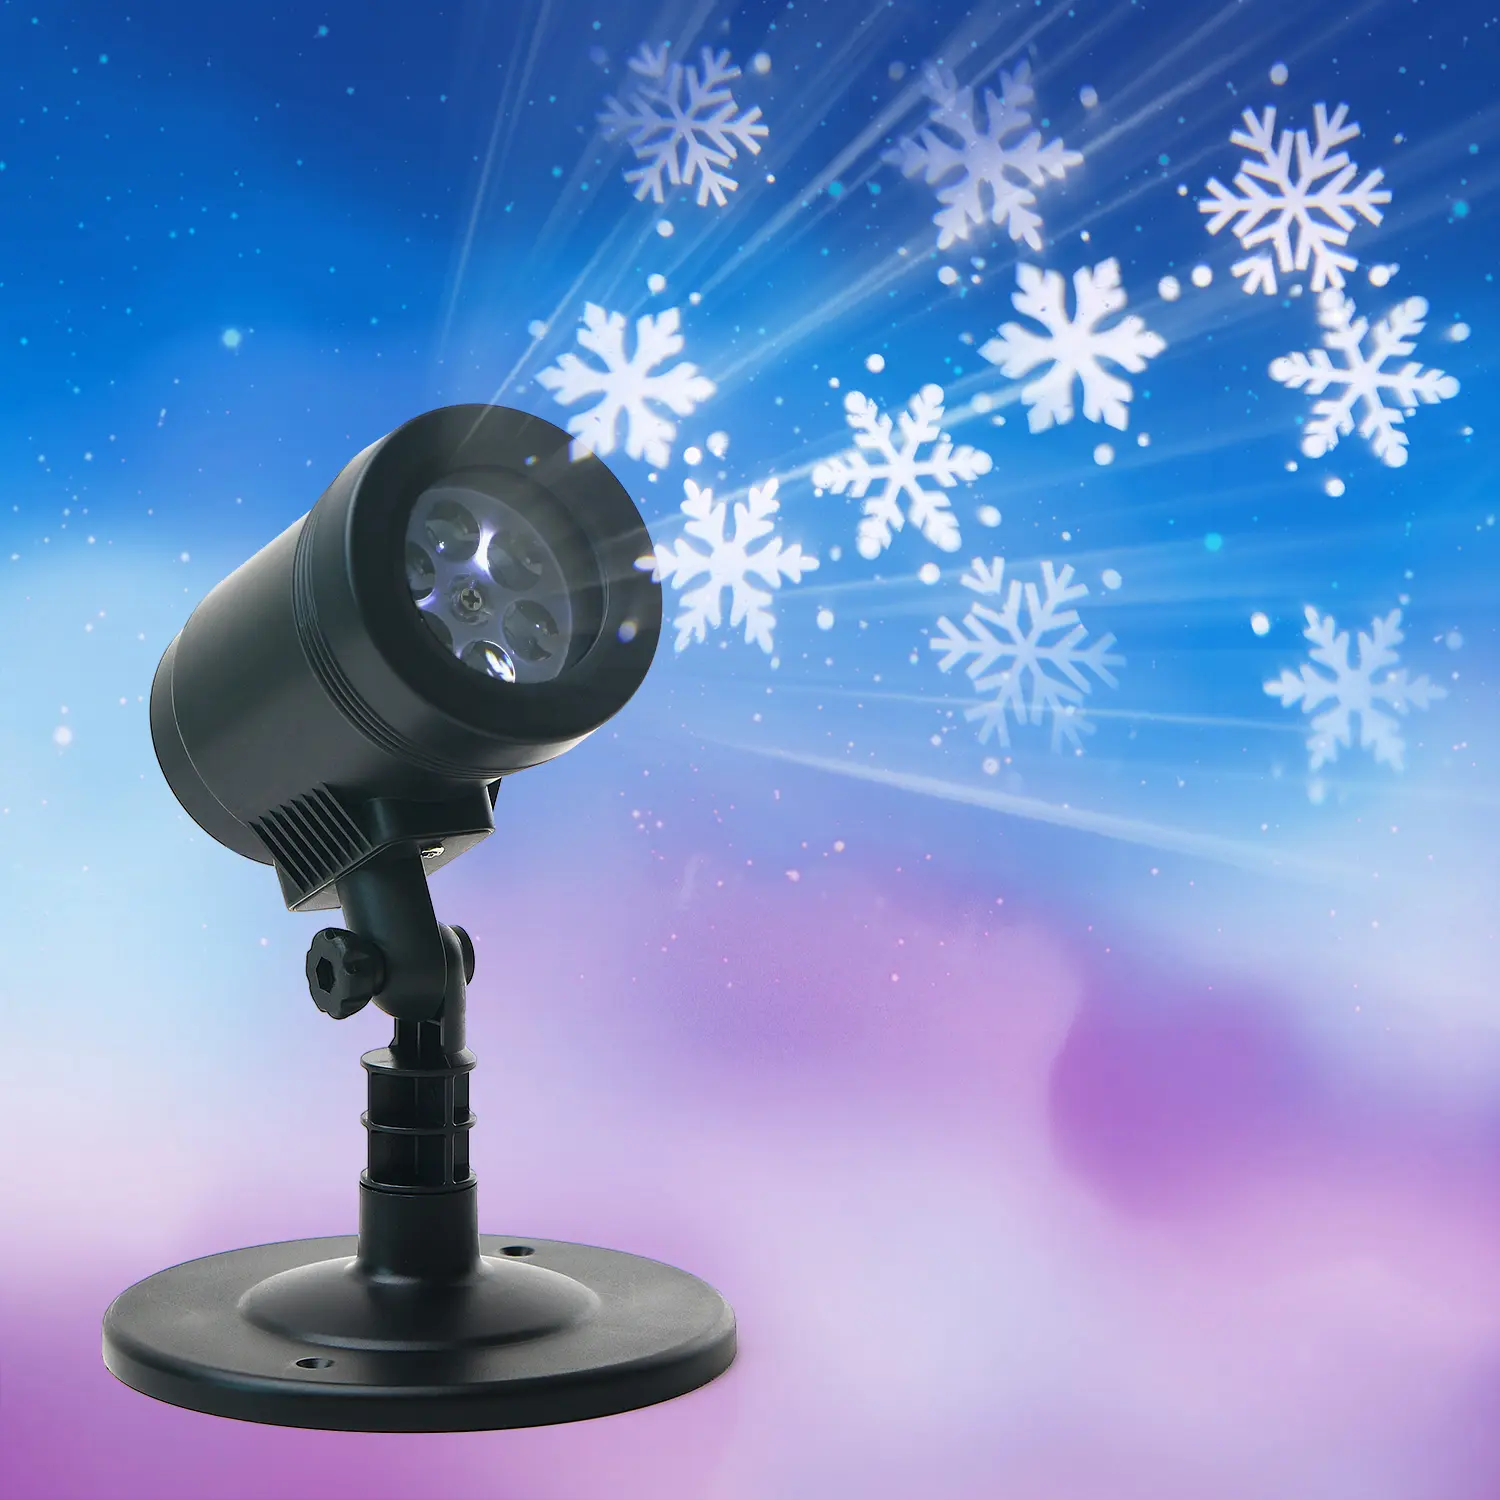 KSWING vente chaude éclairage de noël neige en mouvement projecteur de vacances étanche lumières décoration de vacances en plein air